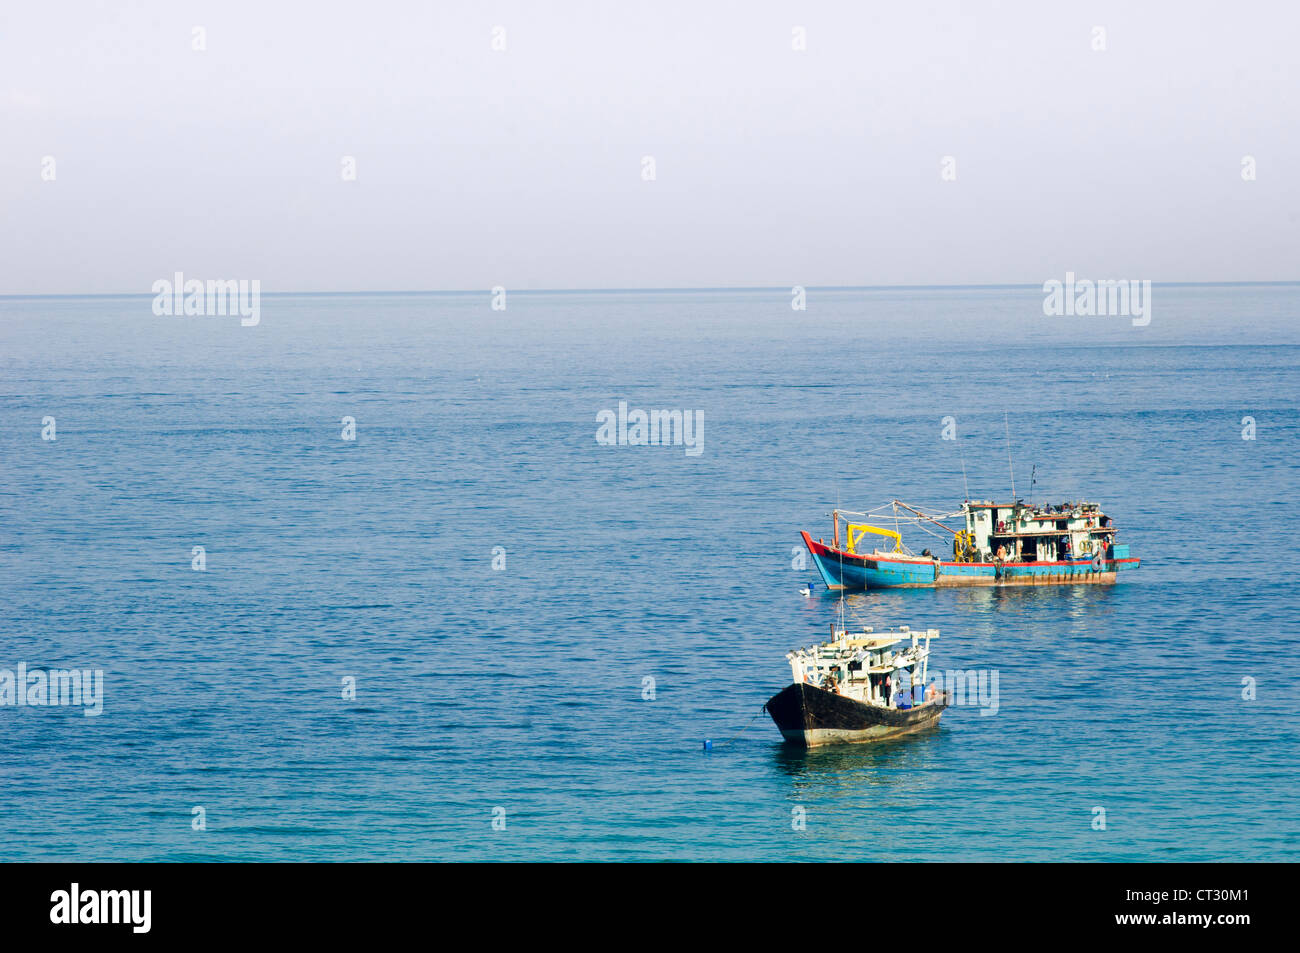 Los barcos de pesca en el mar en calma, la foto es tomada en Pulau Tioman, Malasia. Foto de stock